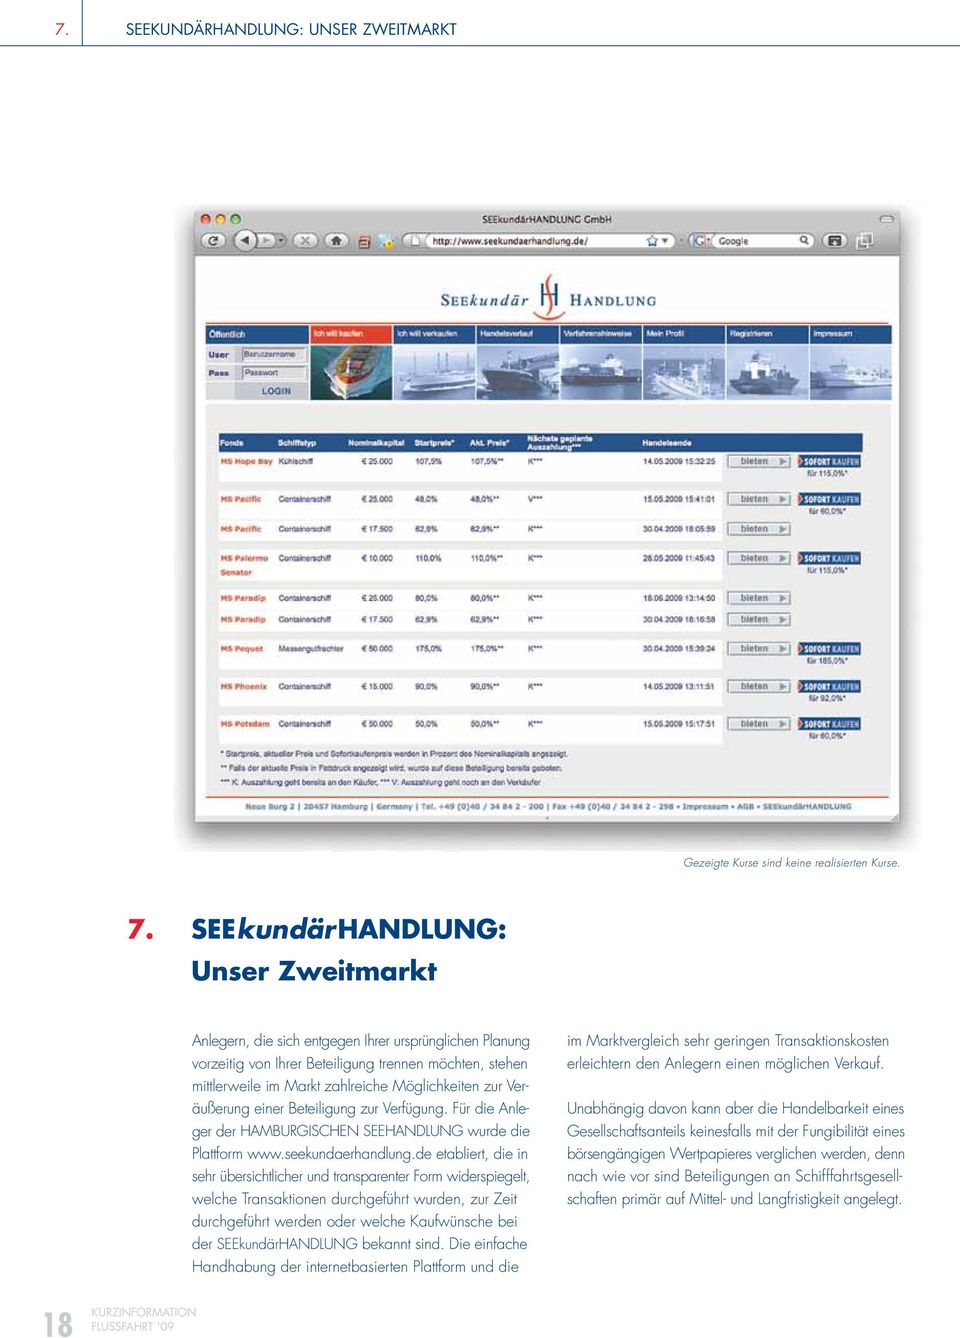 zur Veräußerung einer Beteiligung zur Verfügung. Für die Anleger der HAMBURGISCHEN SEEHANDLUNG wurde die Plattform www.seekundaerhandlung.